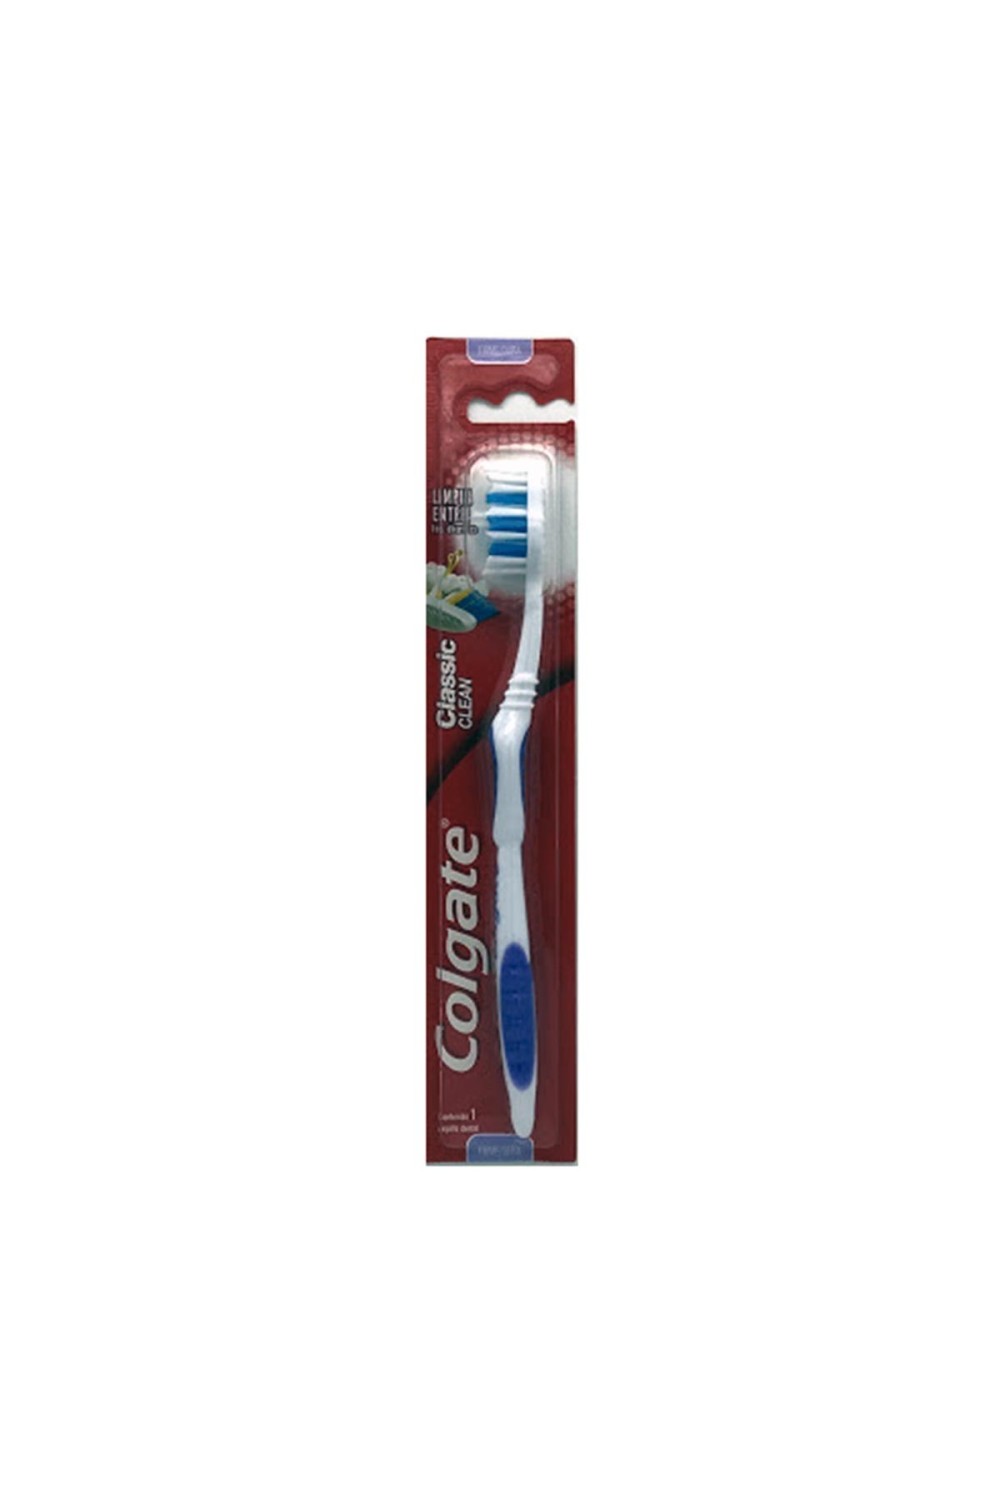 Colgate Classic Toothbrush 1 Unit